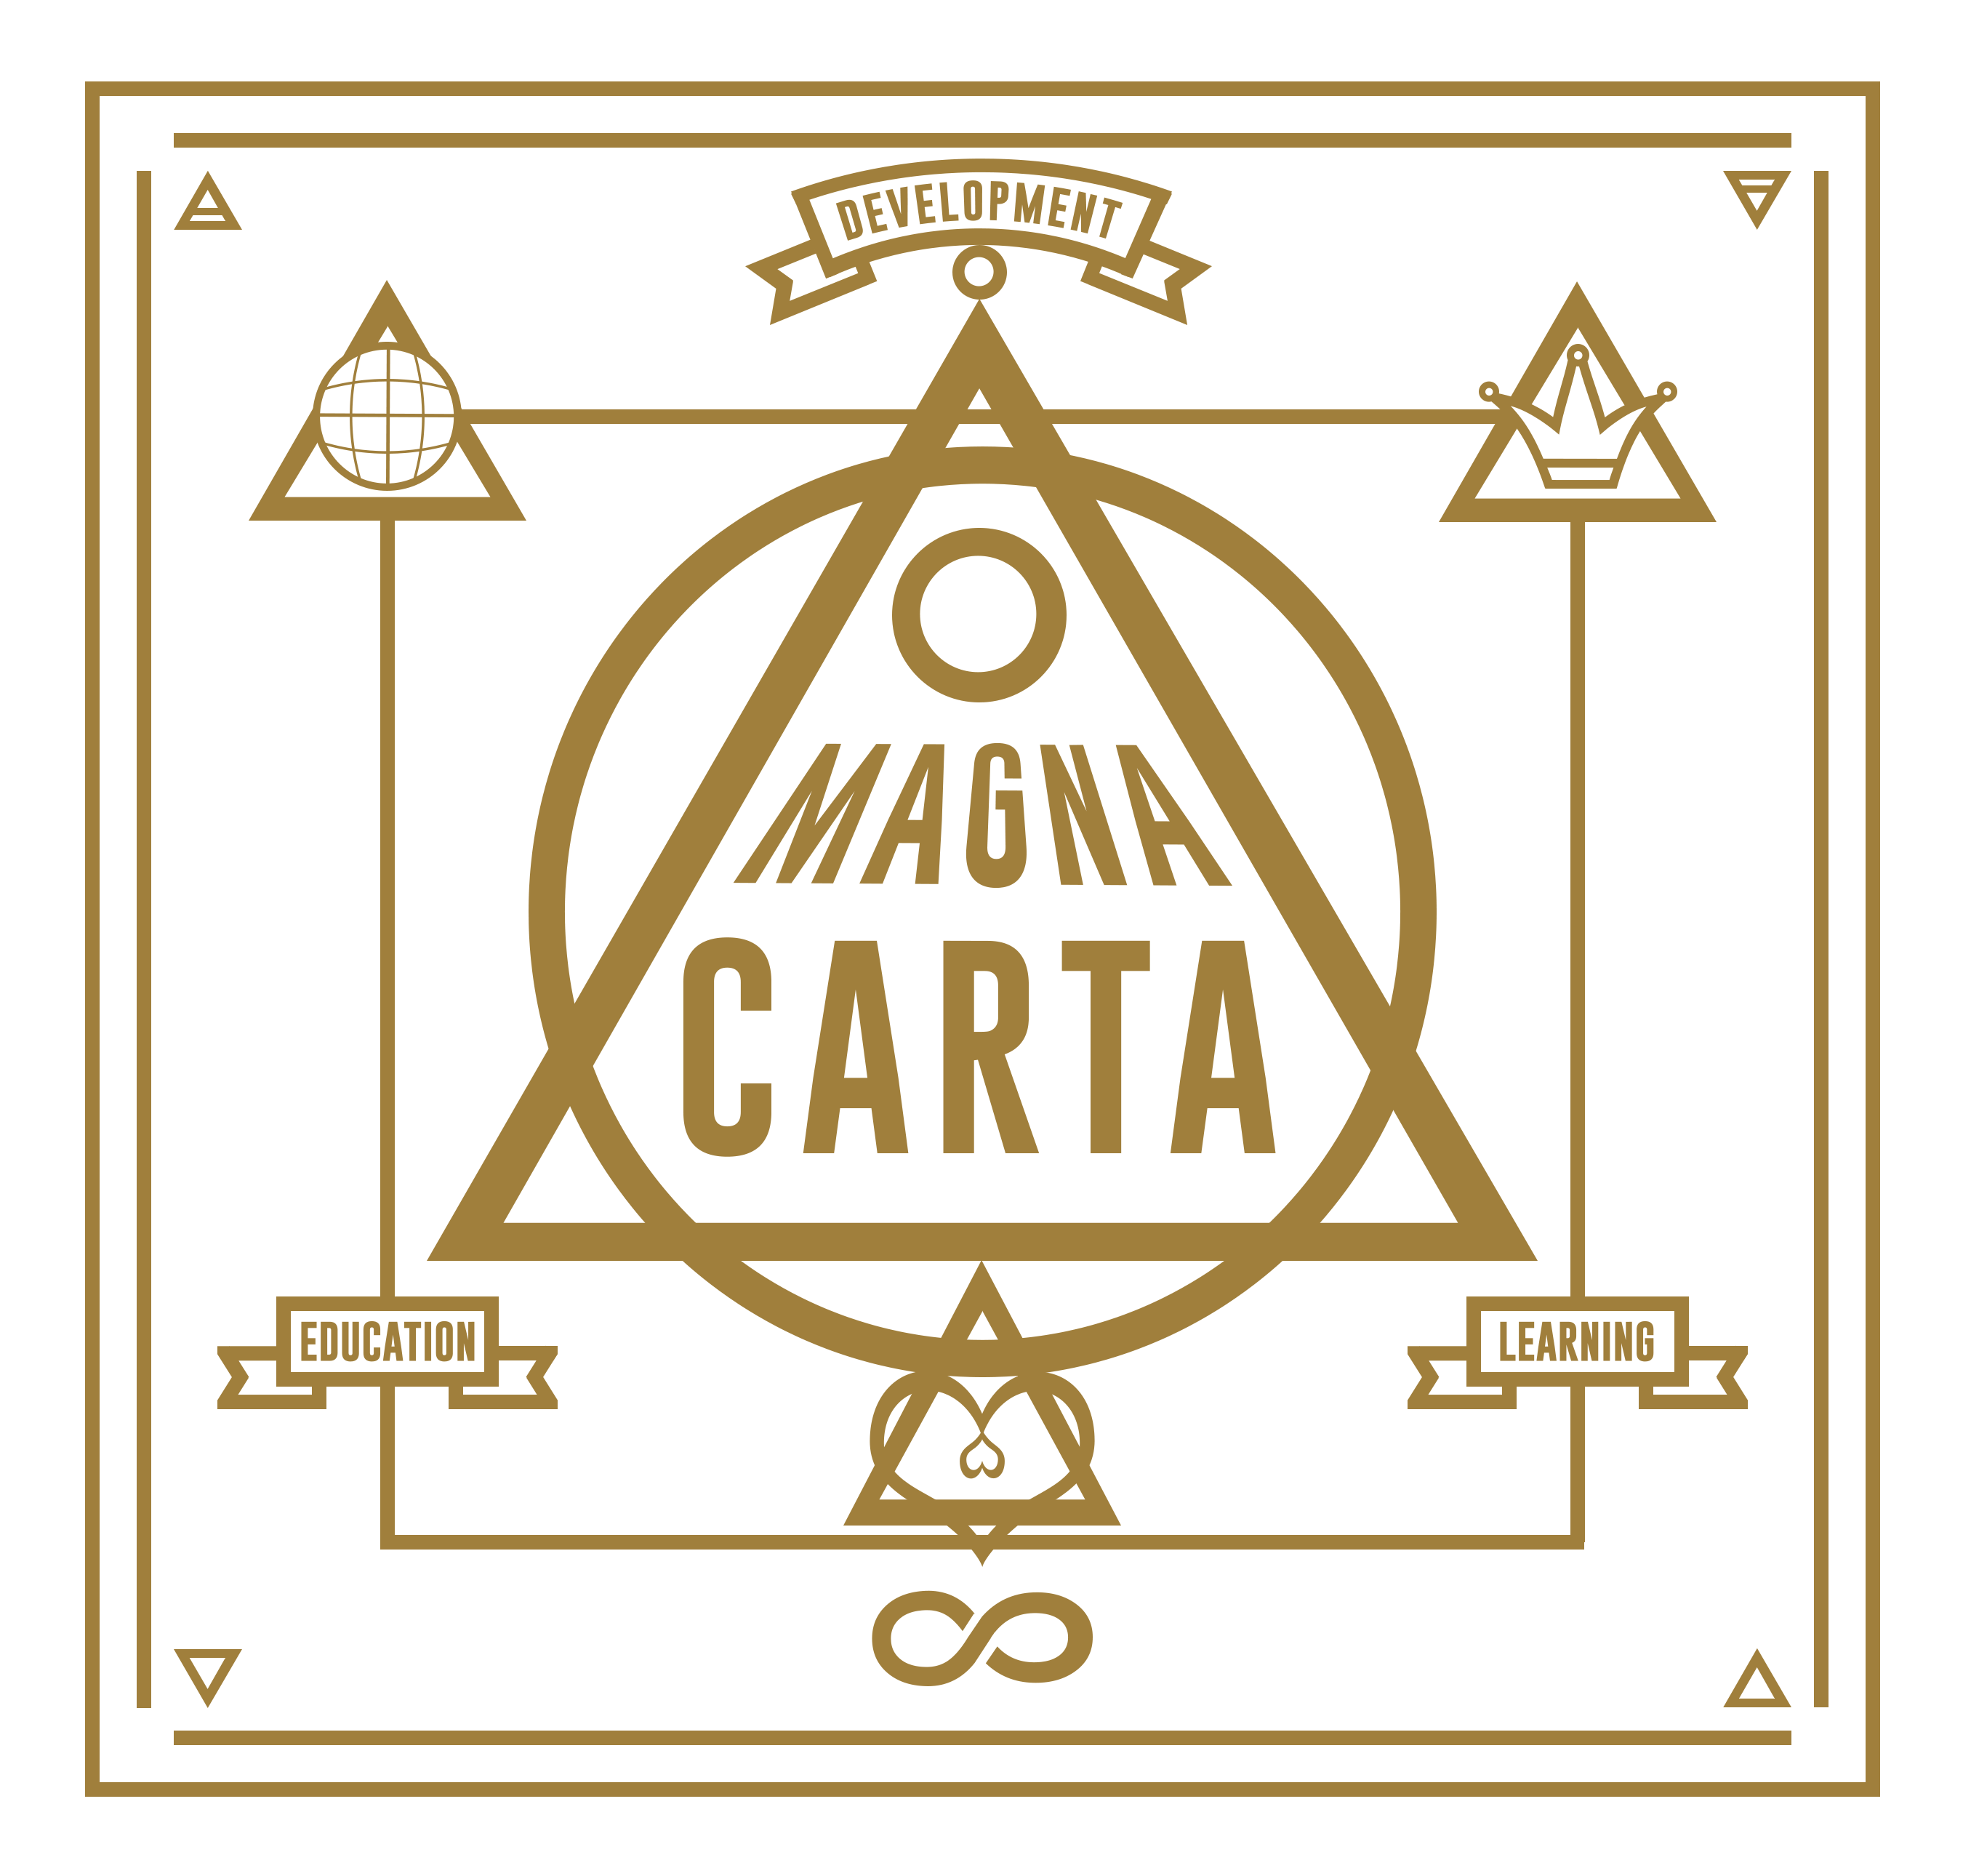 Magna carta